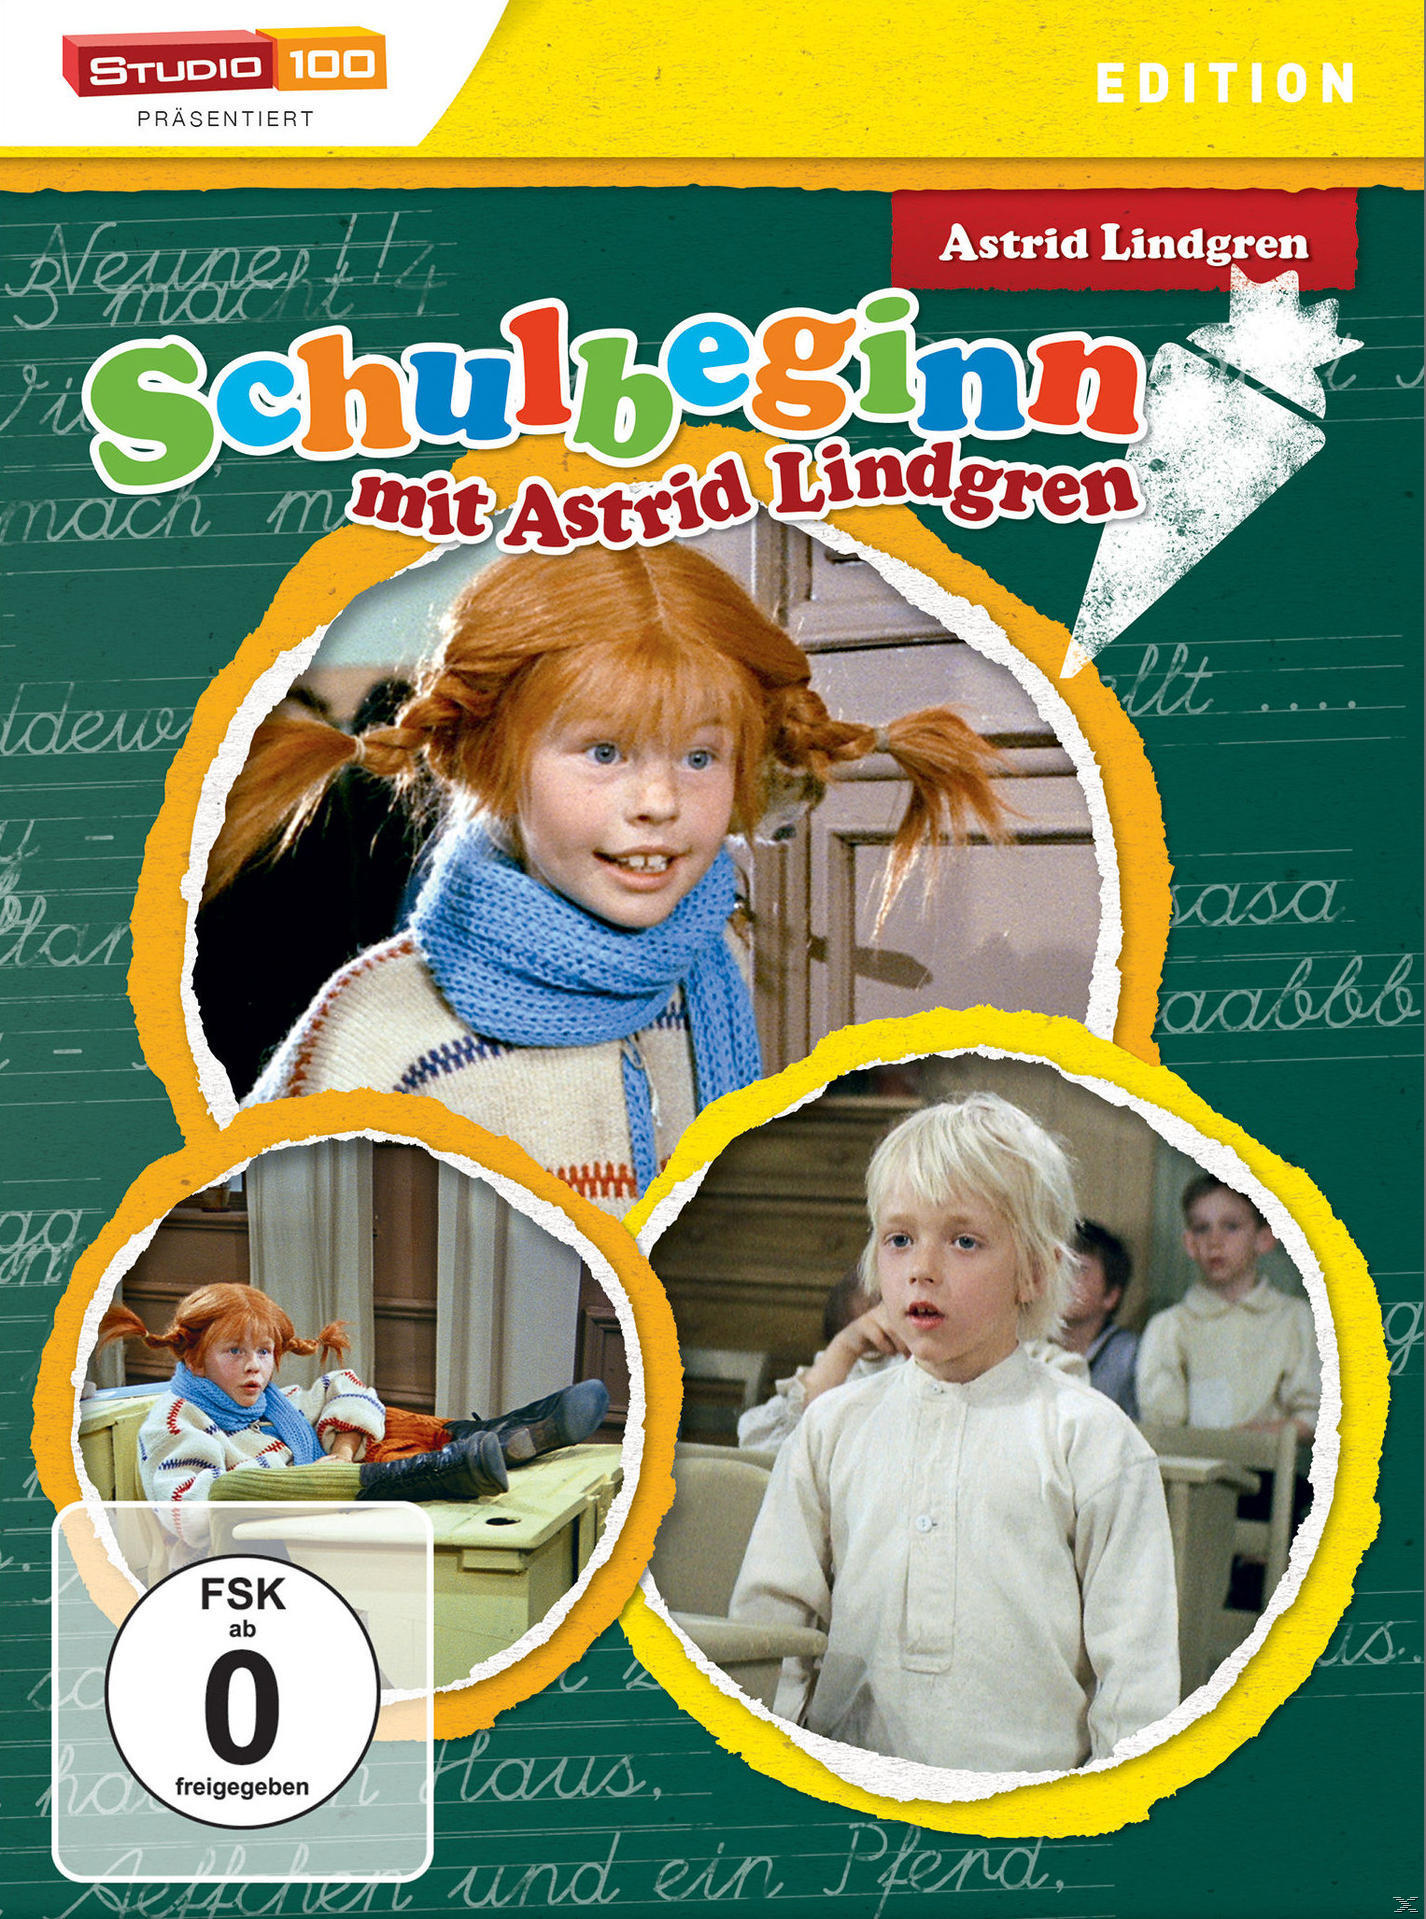 Lindgren Astrid mit Schulbeginn DVD